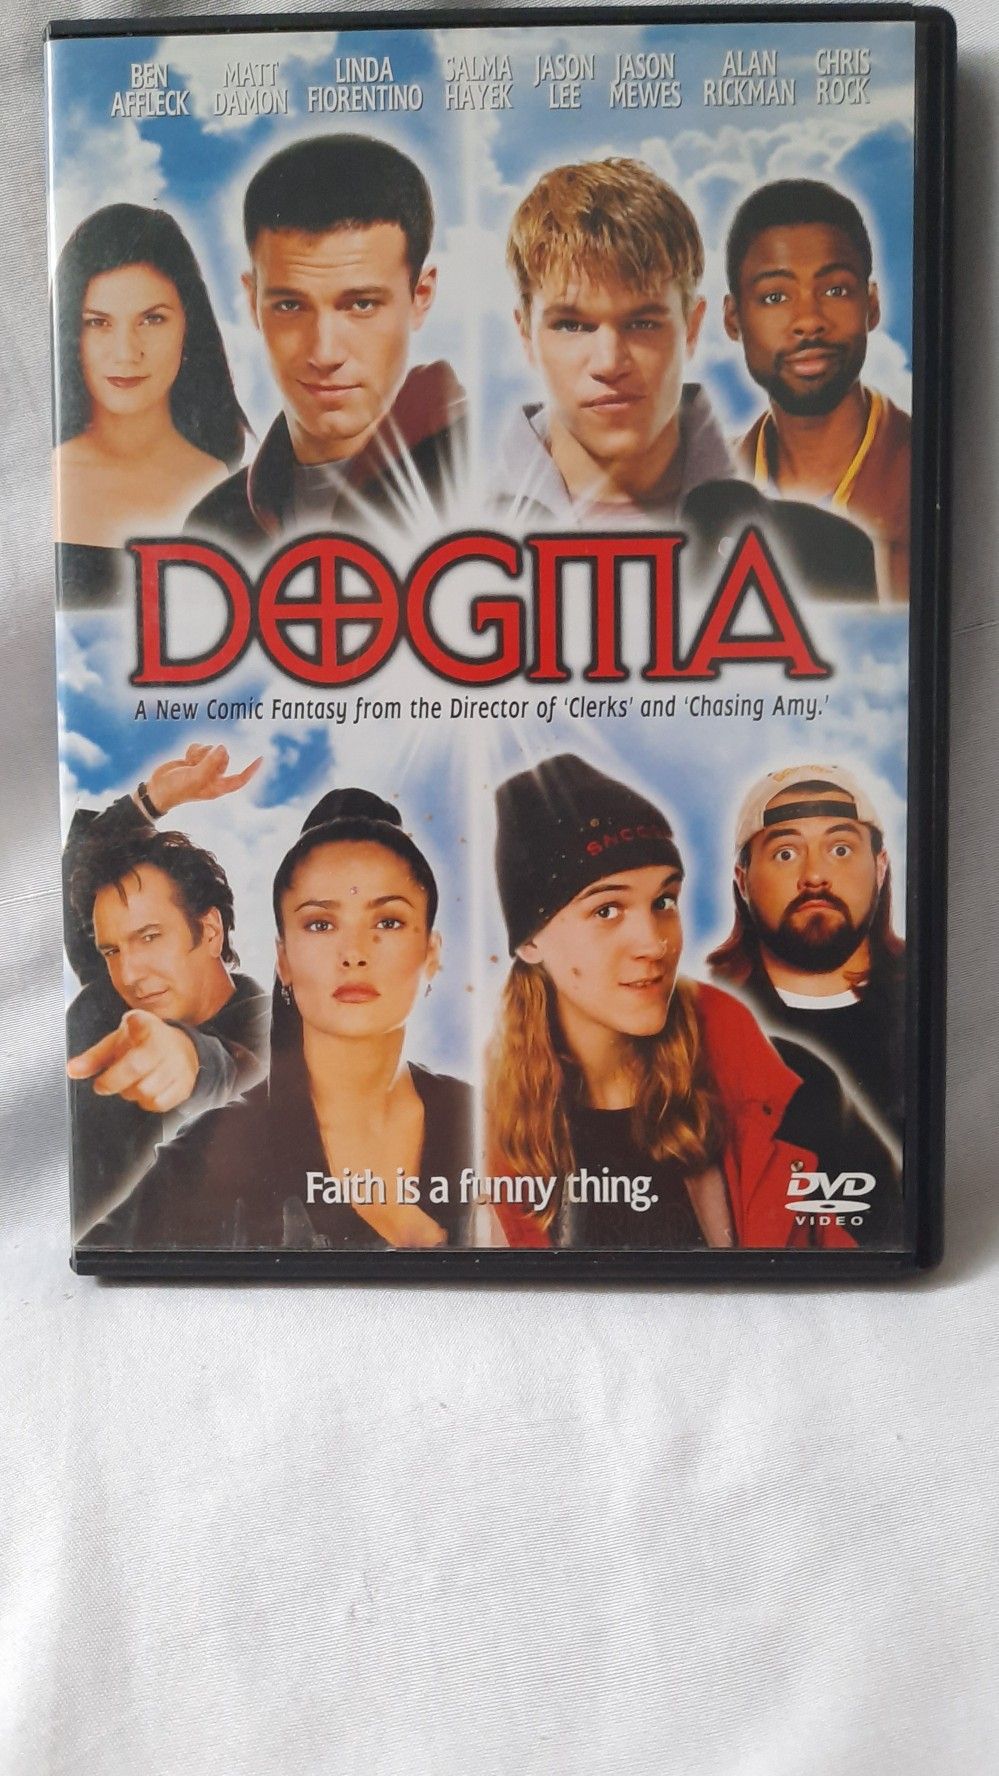 DOGITIA DVD